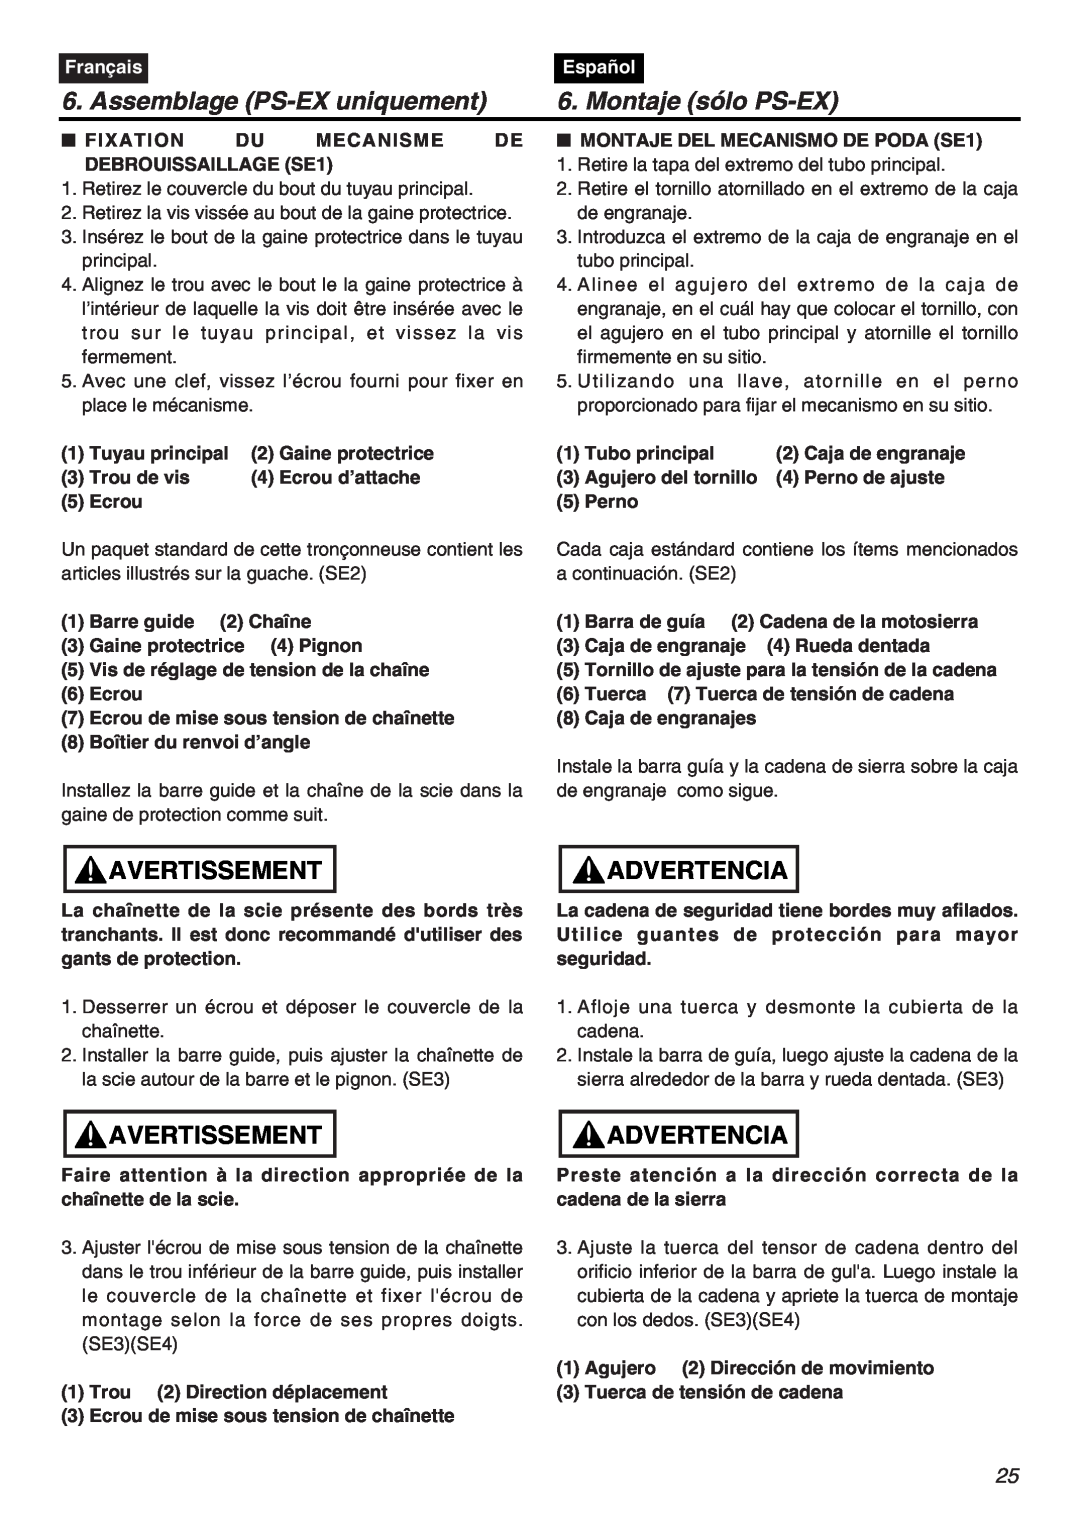 RedMax EXZ2401S-PH manual Assemblage PS-EX uniquement, Montaje sólo PS-EX, Avertissement, Advertencia, Français, Español 